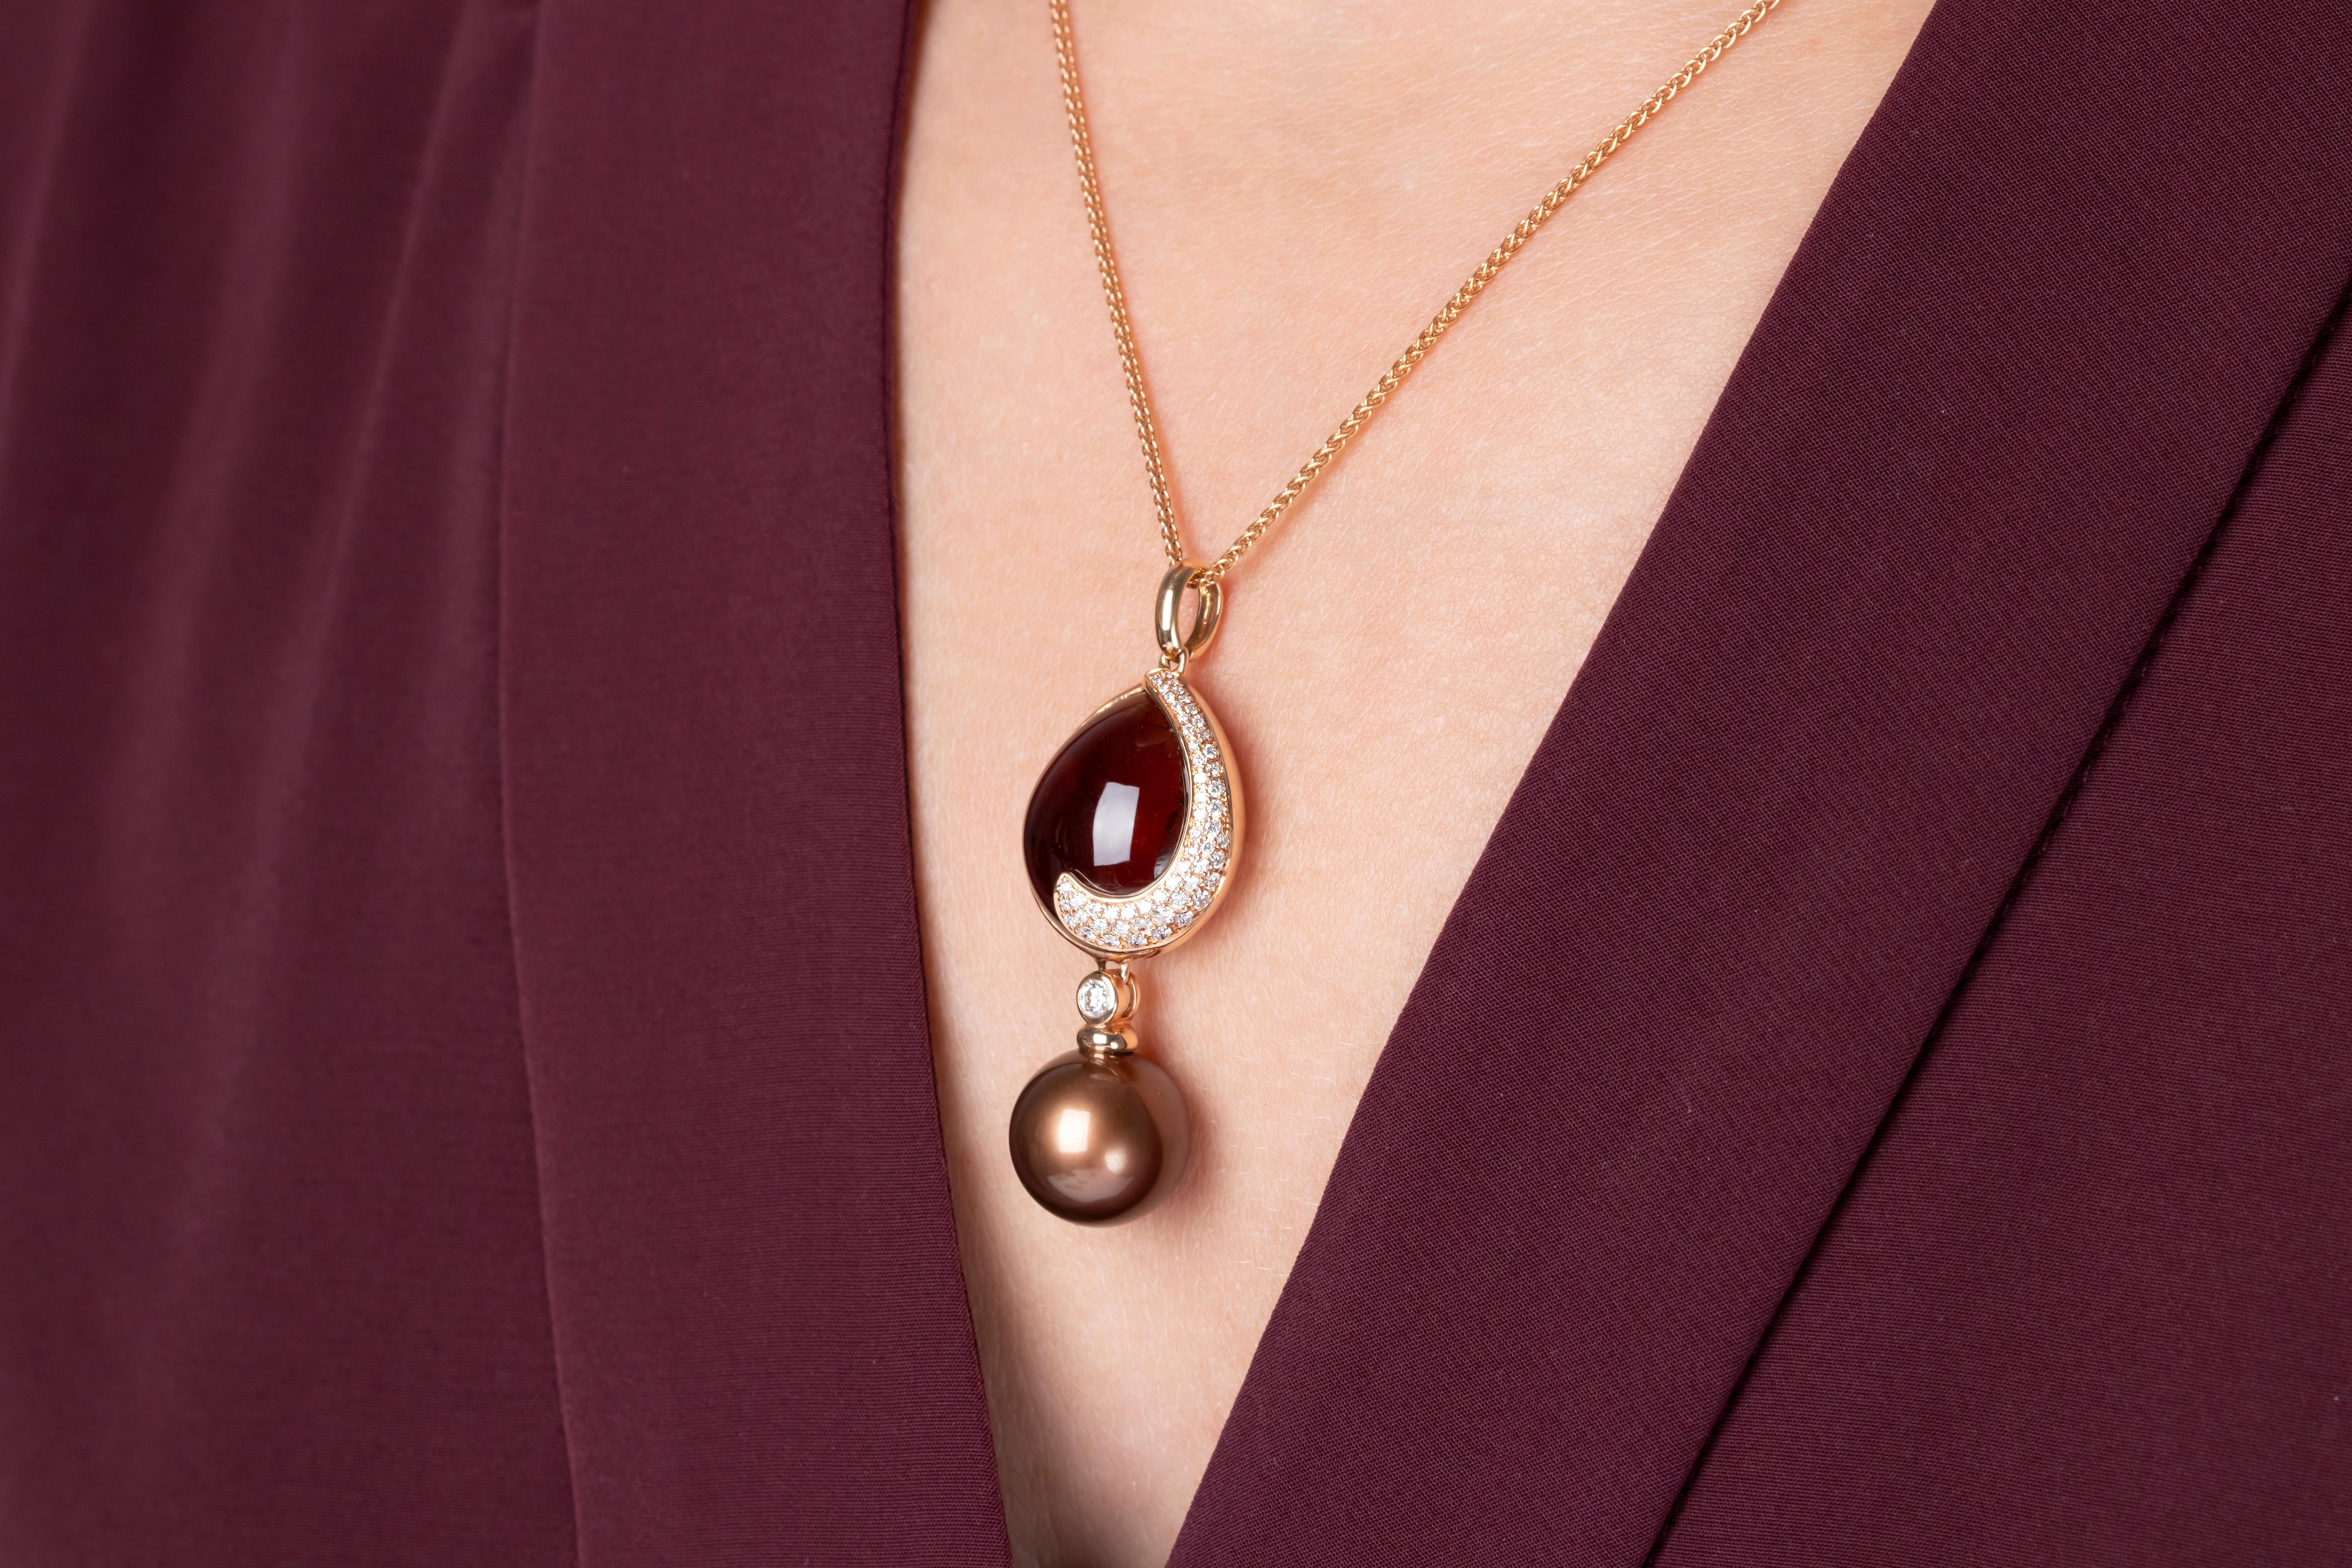 Ce pendentif exceptionnel de Yoko London présente une perle de Tahiti lustrée de couleur chocolat suspendue à un cabochon en quartz cognac, le tout en or rose 18 carats serti de diamants. Fixé à une chaîne spiga en or rose de 16 pouces. Les perles